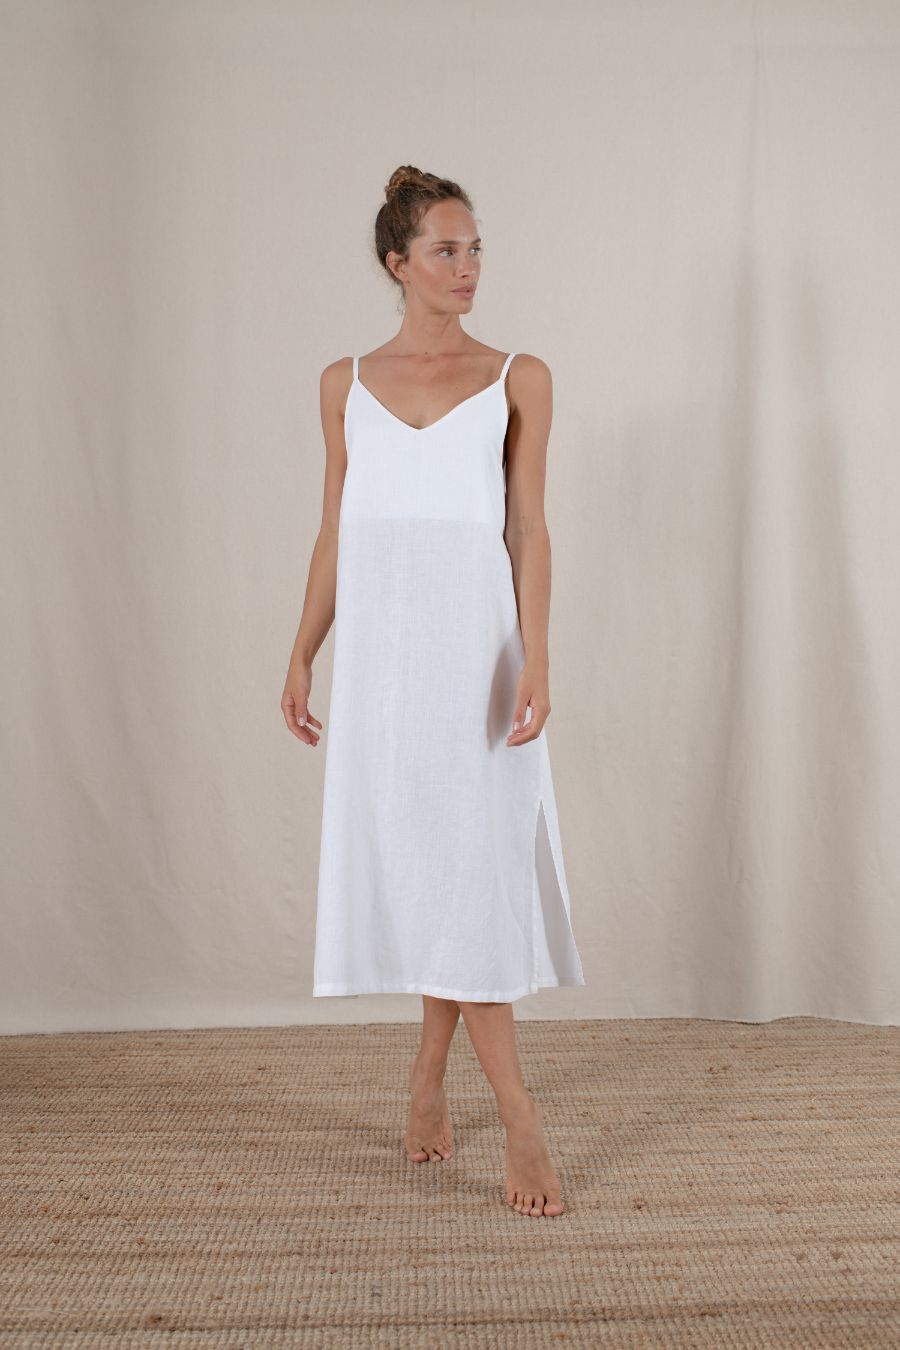 linen beach dress